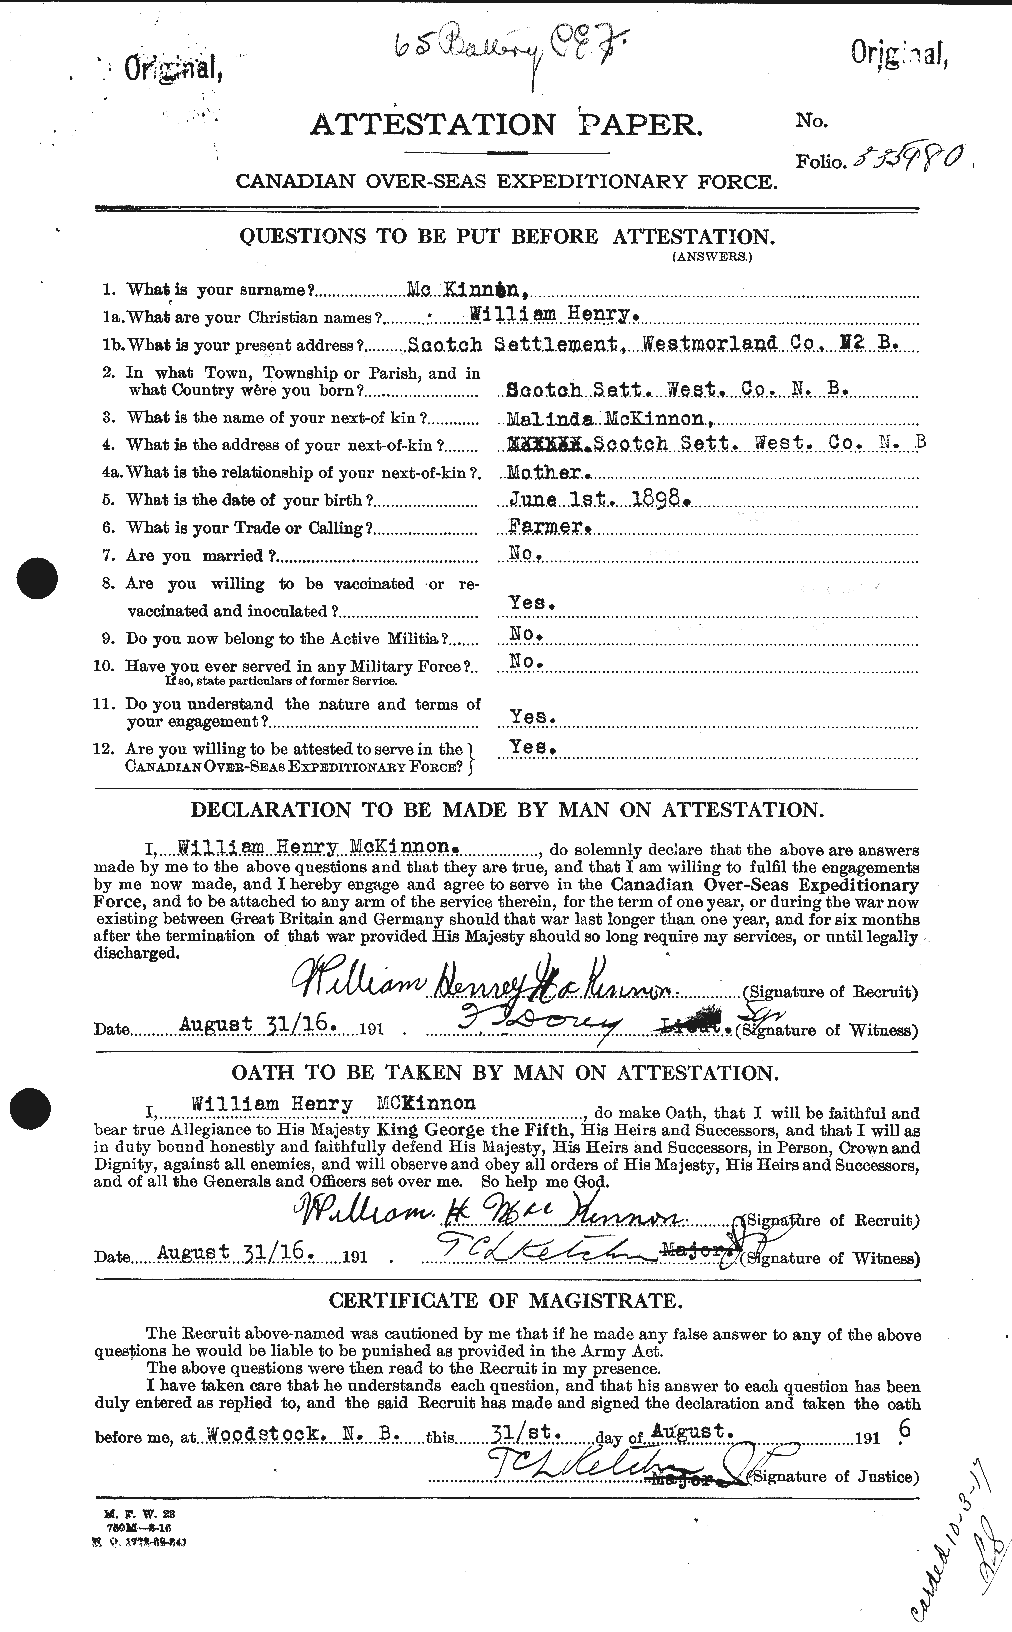 Dossiers du Personnel de la Première Guerre mondiale - CEC 534329a